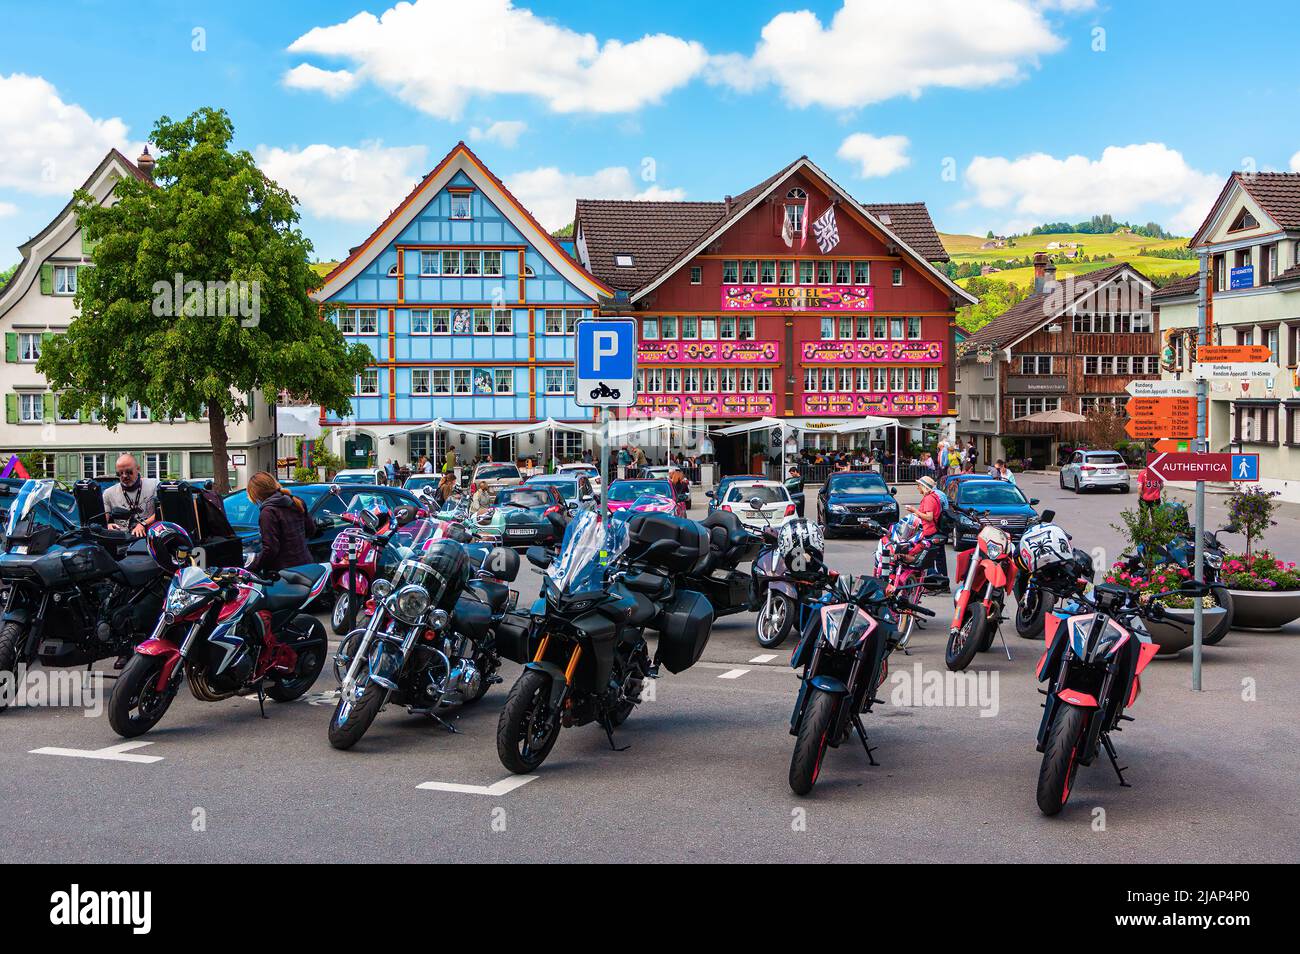 Appenzell, Schweiz - 27. Mai 2022: Der Hauptplatz in Appenzell, Schweiz, wo die Wähler noch immer mit Handaufhebung abstimmen Stockfoto